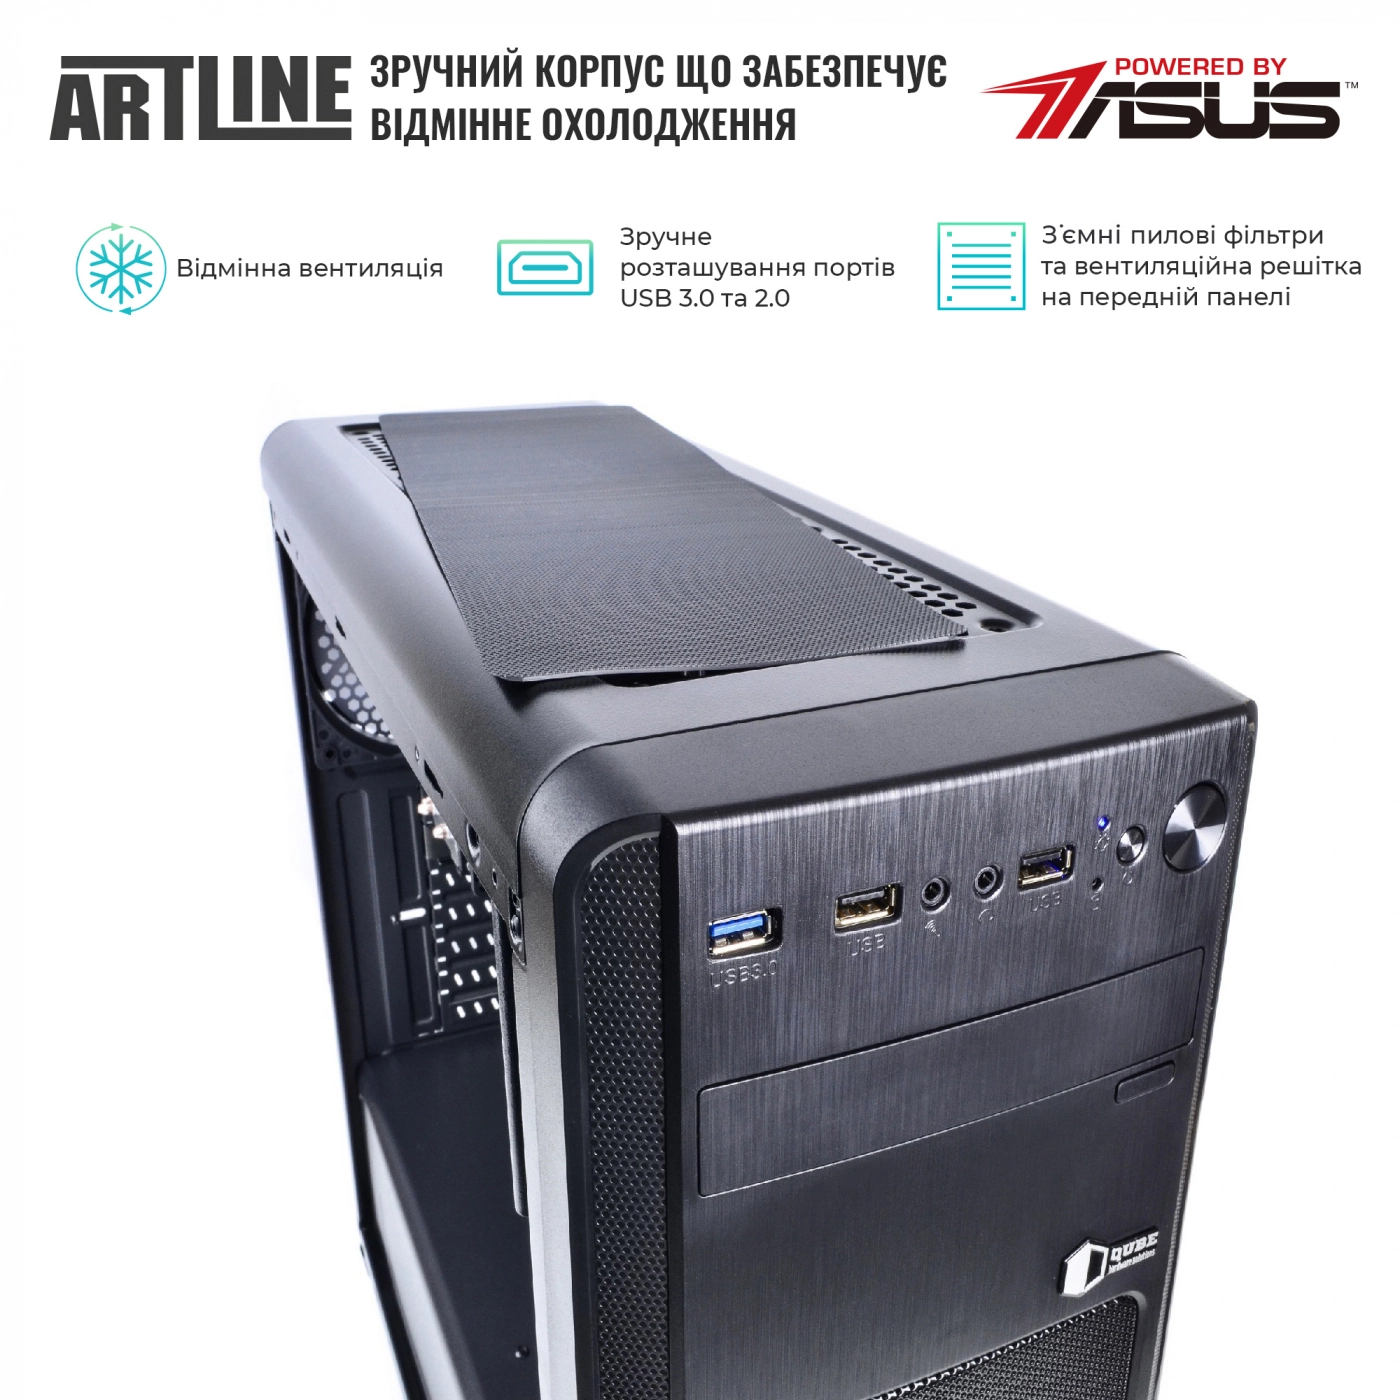 Купить Сервер ARTLINE Business T61v07 - фото 2